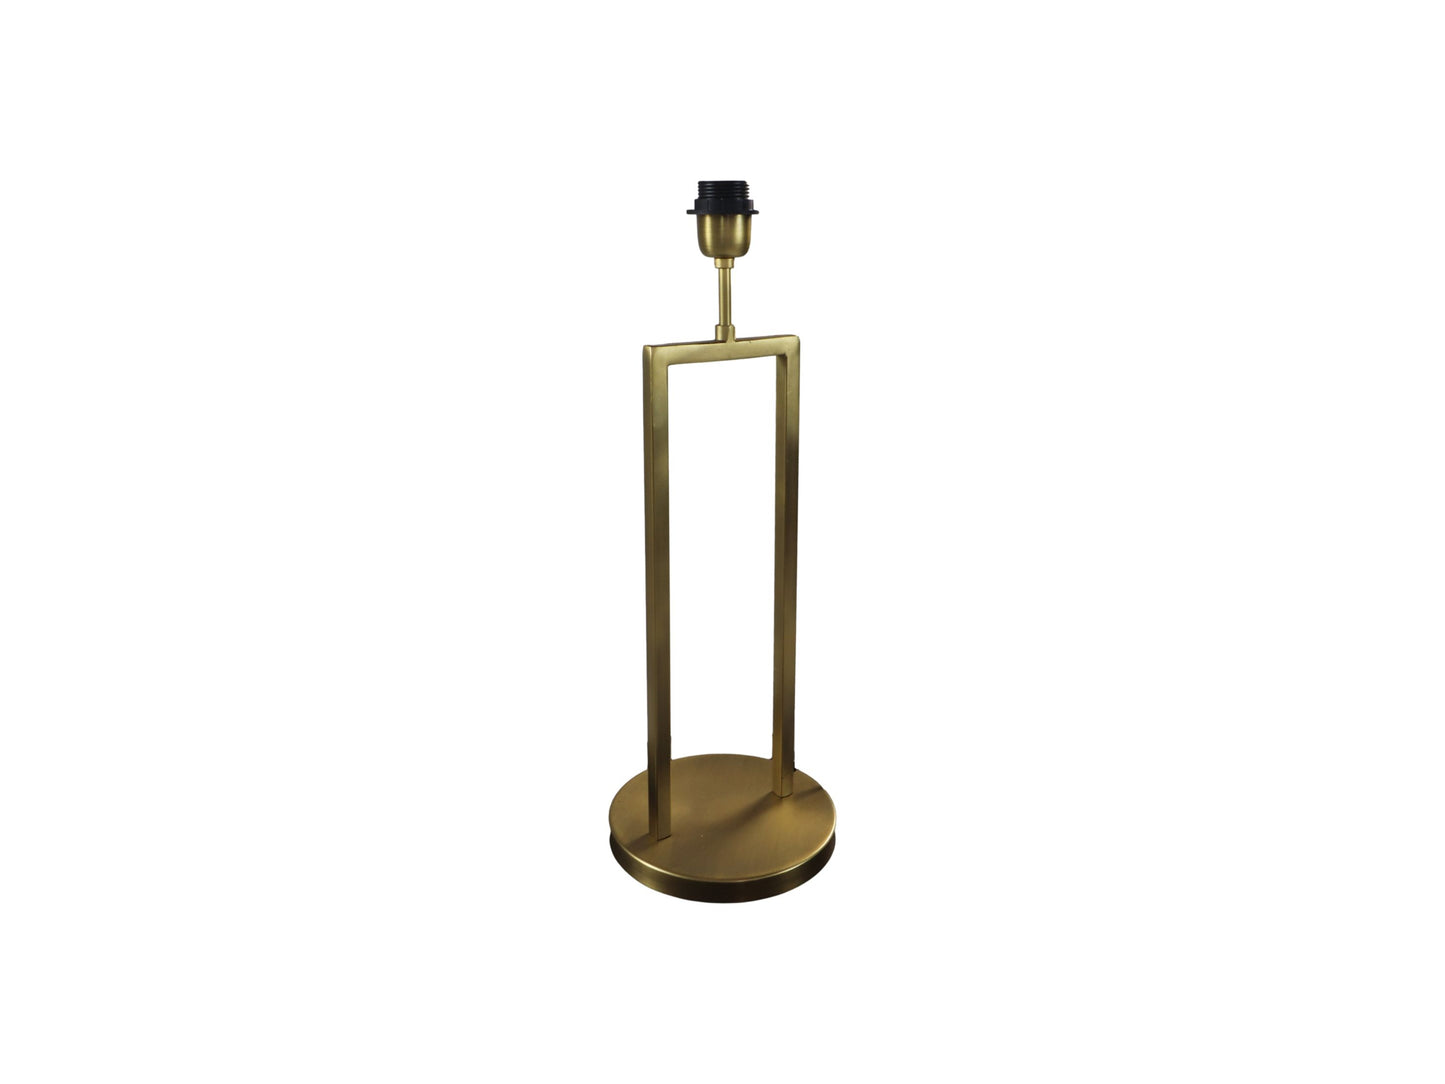 Tafellamp - 20x20x55 - Goud - Metaal